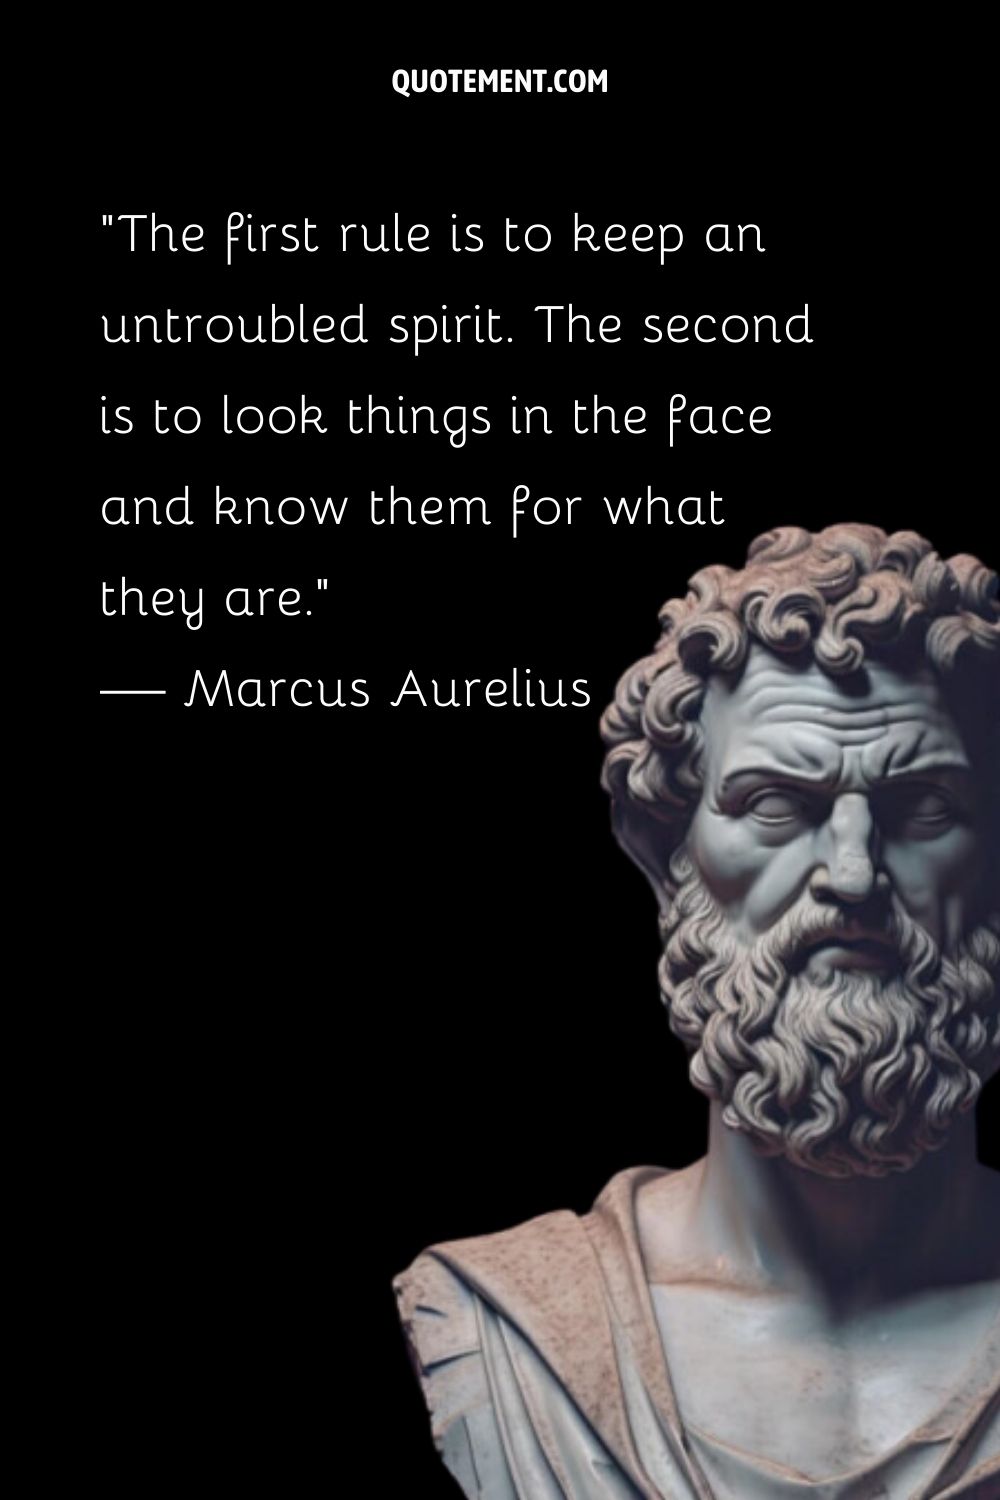 Carved philosopher Marcus Aurelius embodies silent strength